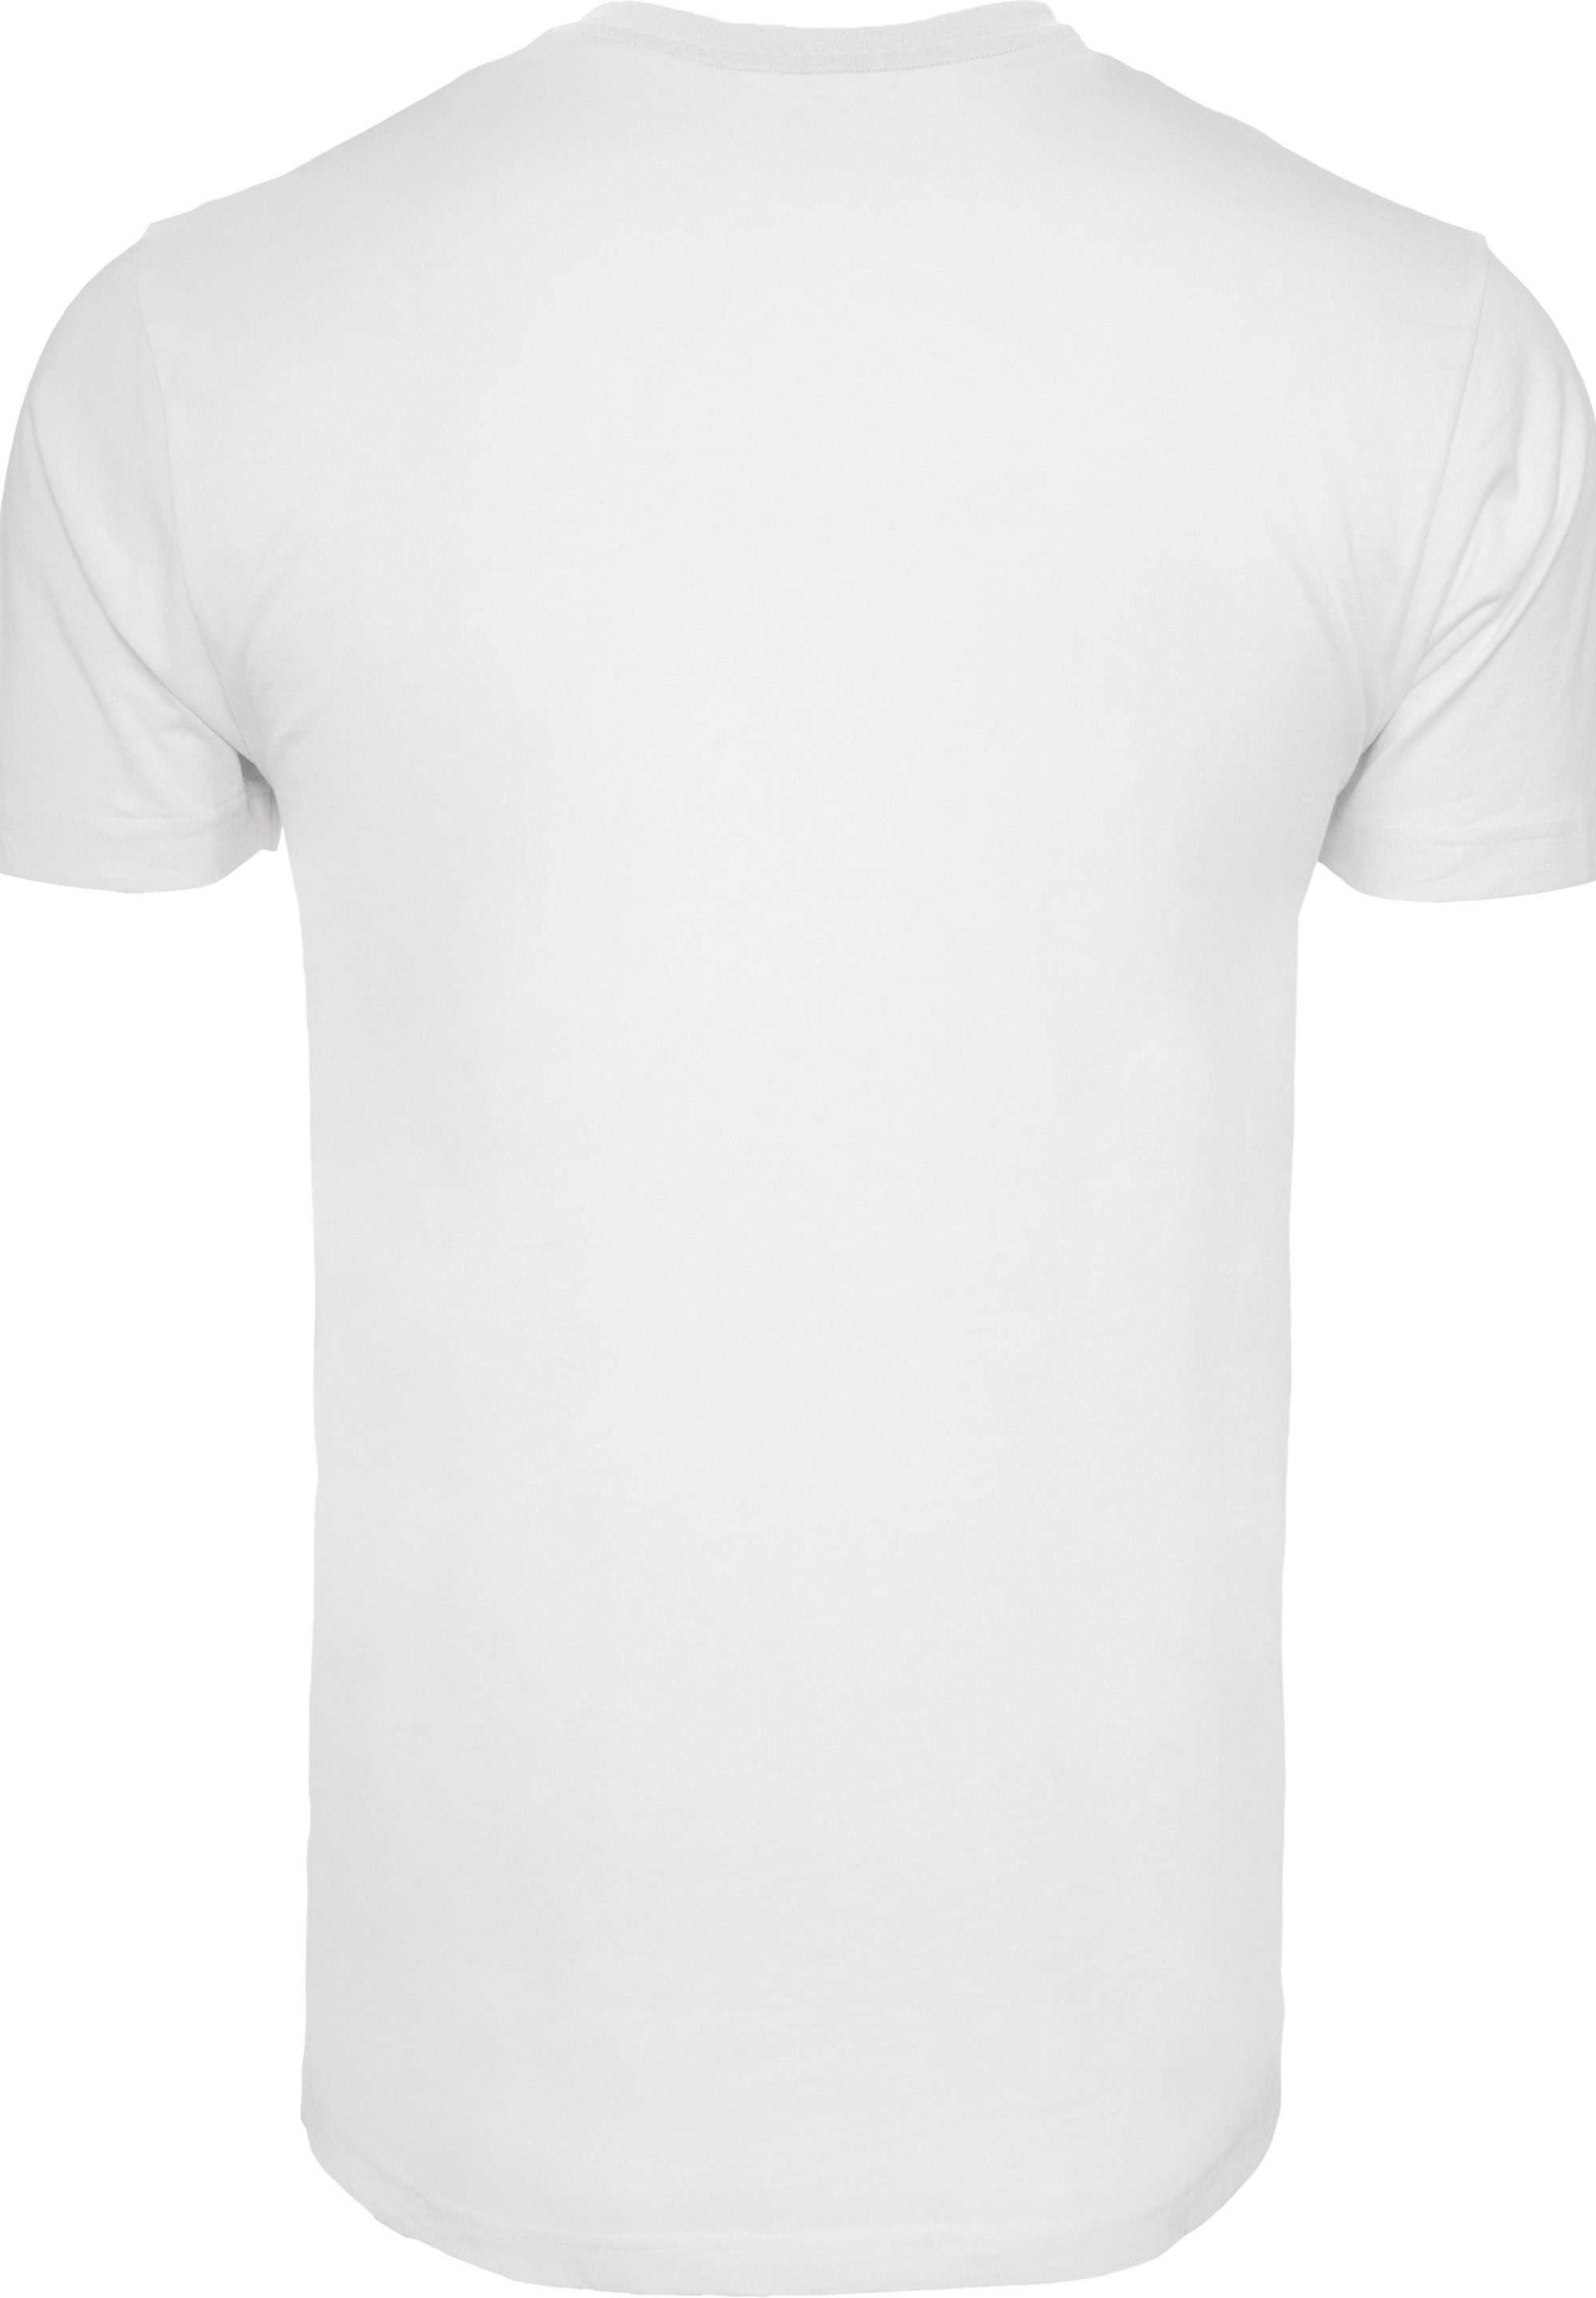 Bamm T-Shirt F4NT4STIC Herren,Premium T-Shirt weiß Merch,Regular-Fit,Basic,Bedruckt Familie Die And Bamm Dino Feuerstein